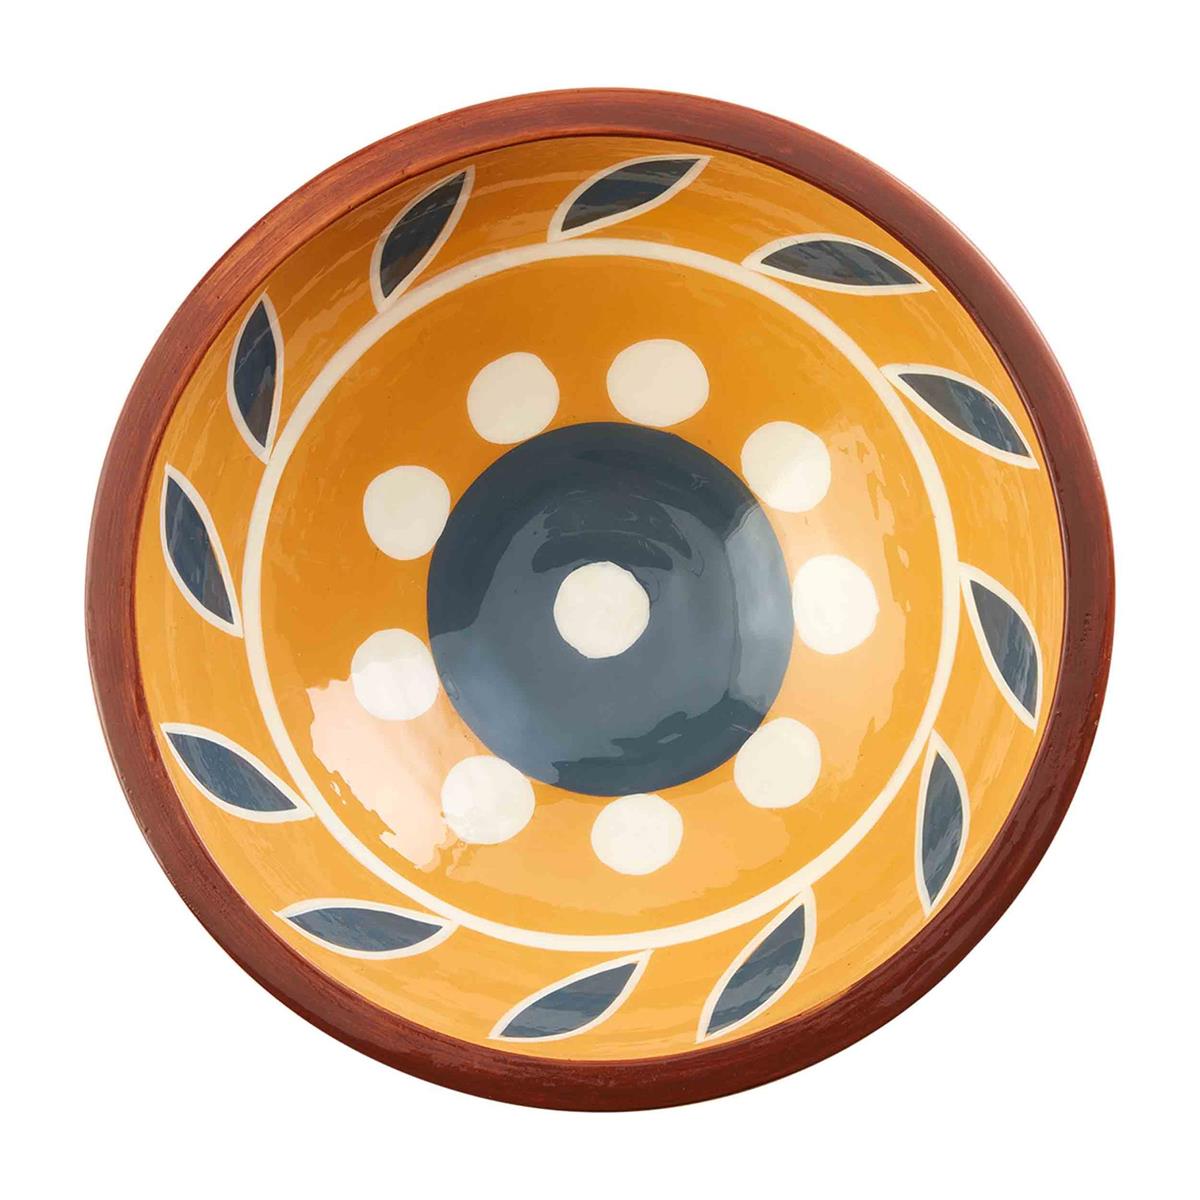 Painted Decorative Bowl (3 Colors)